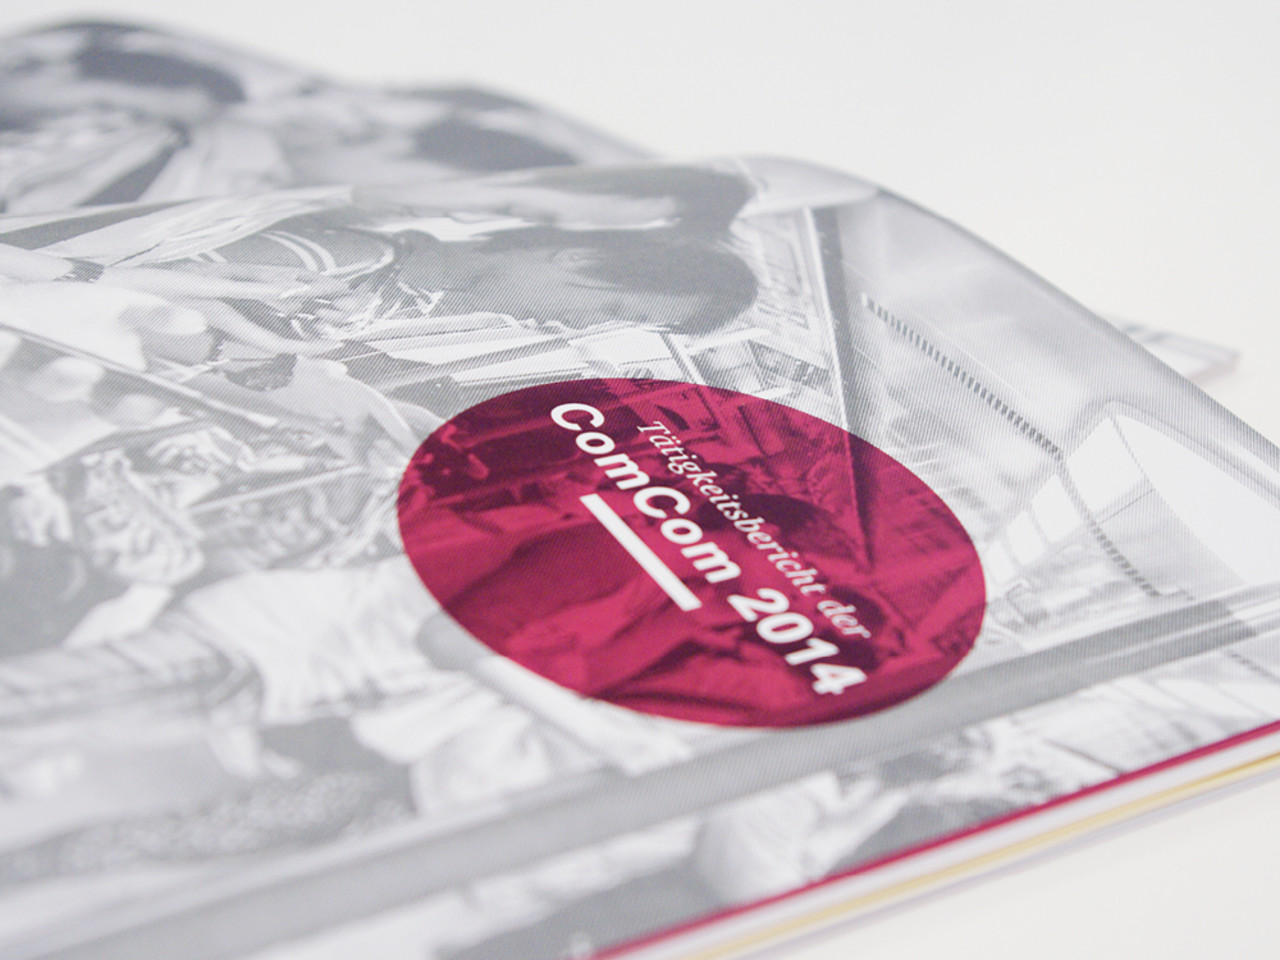 ComCom Tätigkeitsbericht 2014 im neuen Design